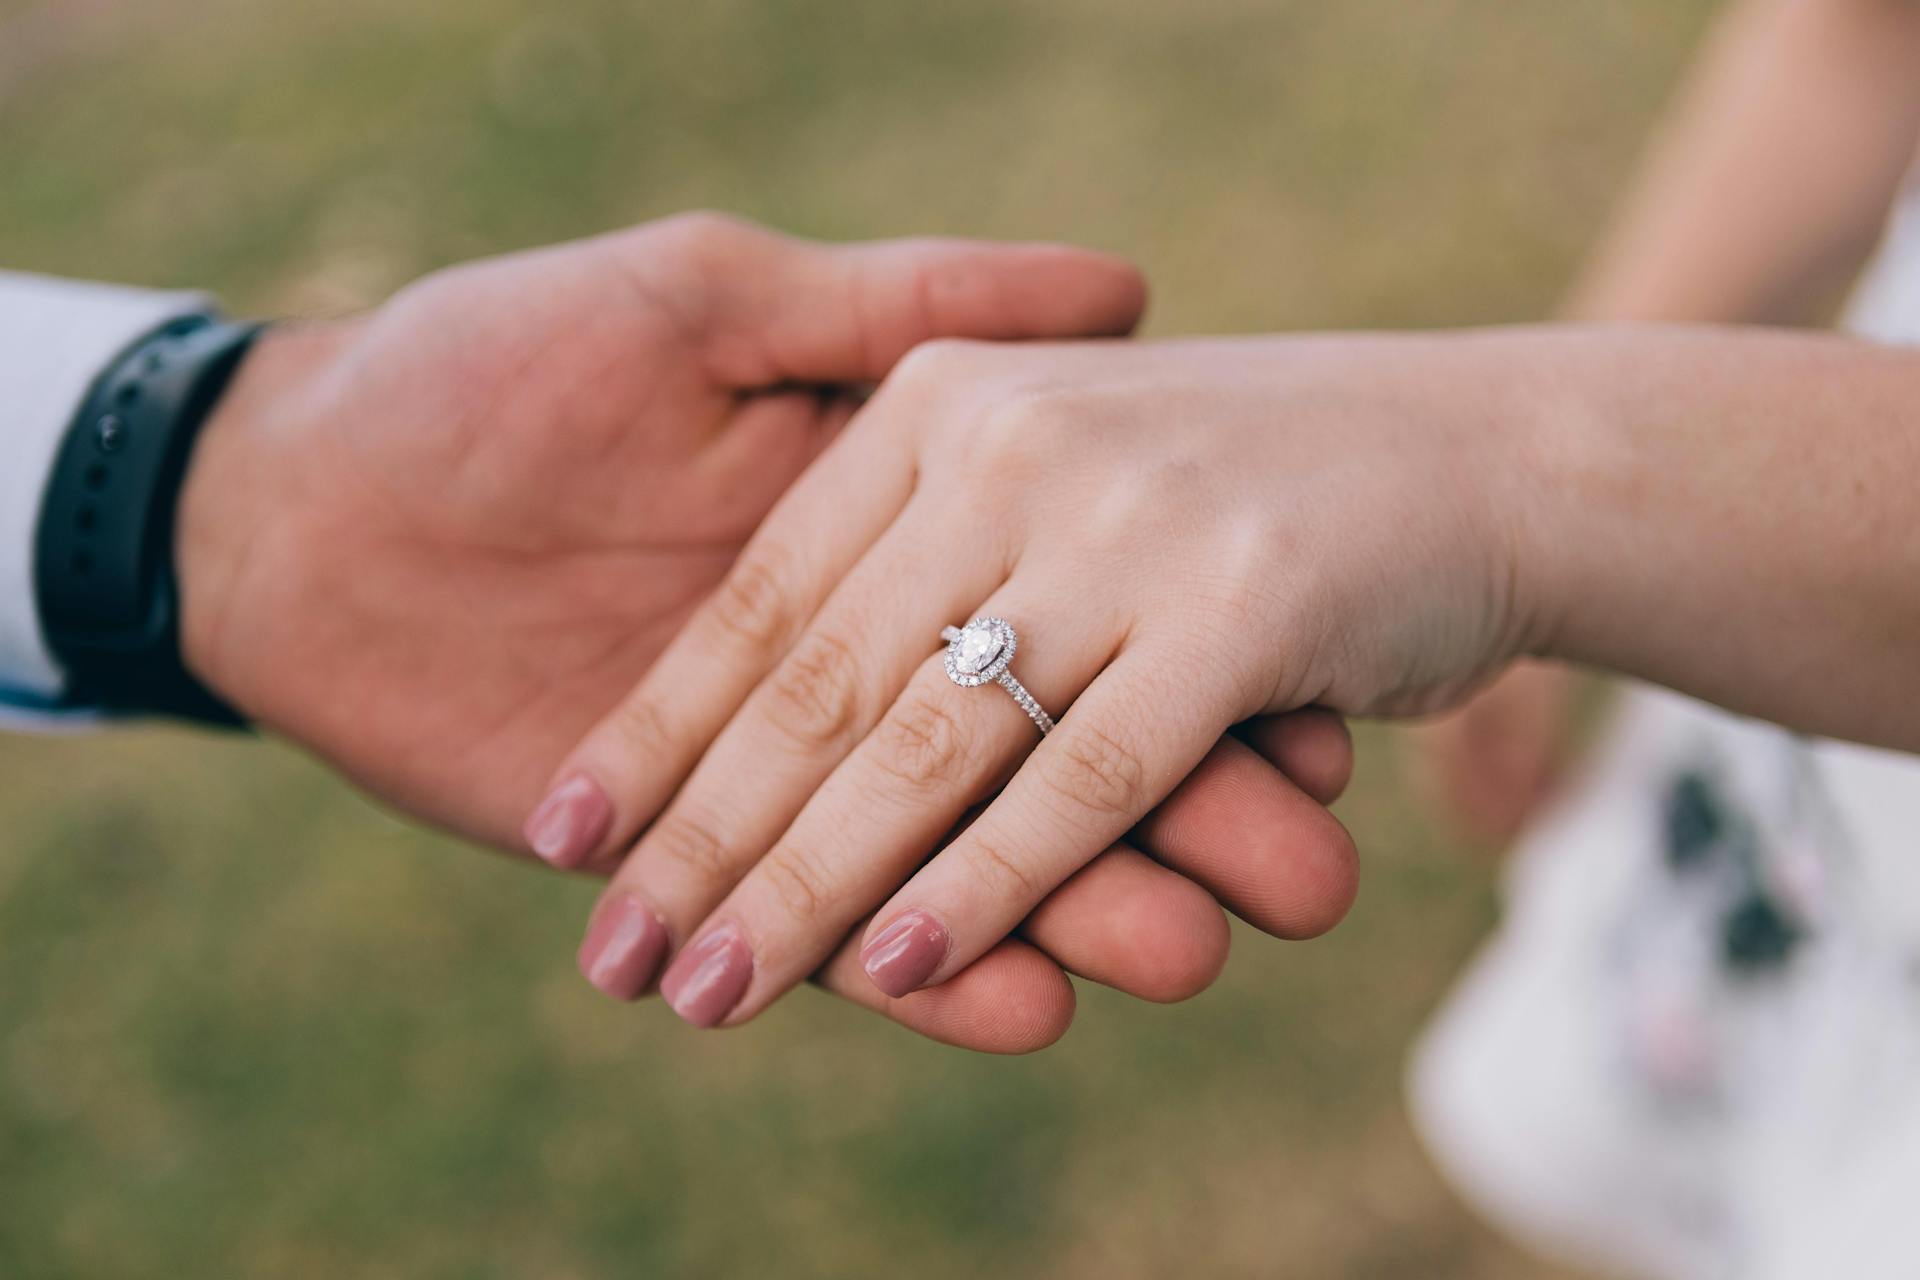 A couple's engagement photo | Source: Pexels